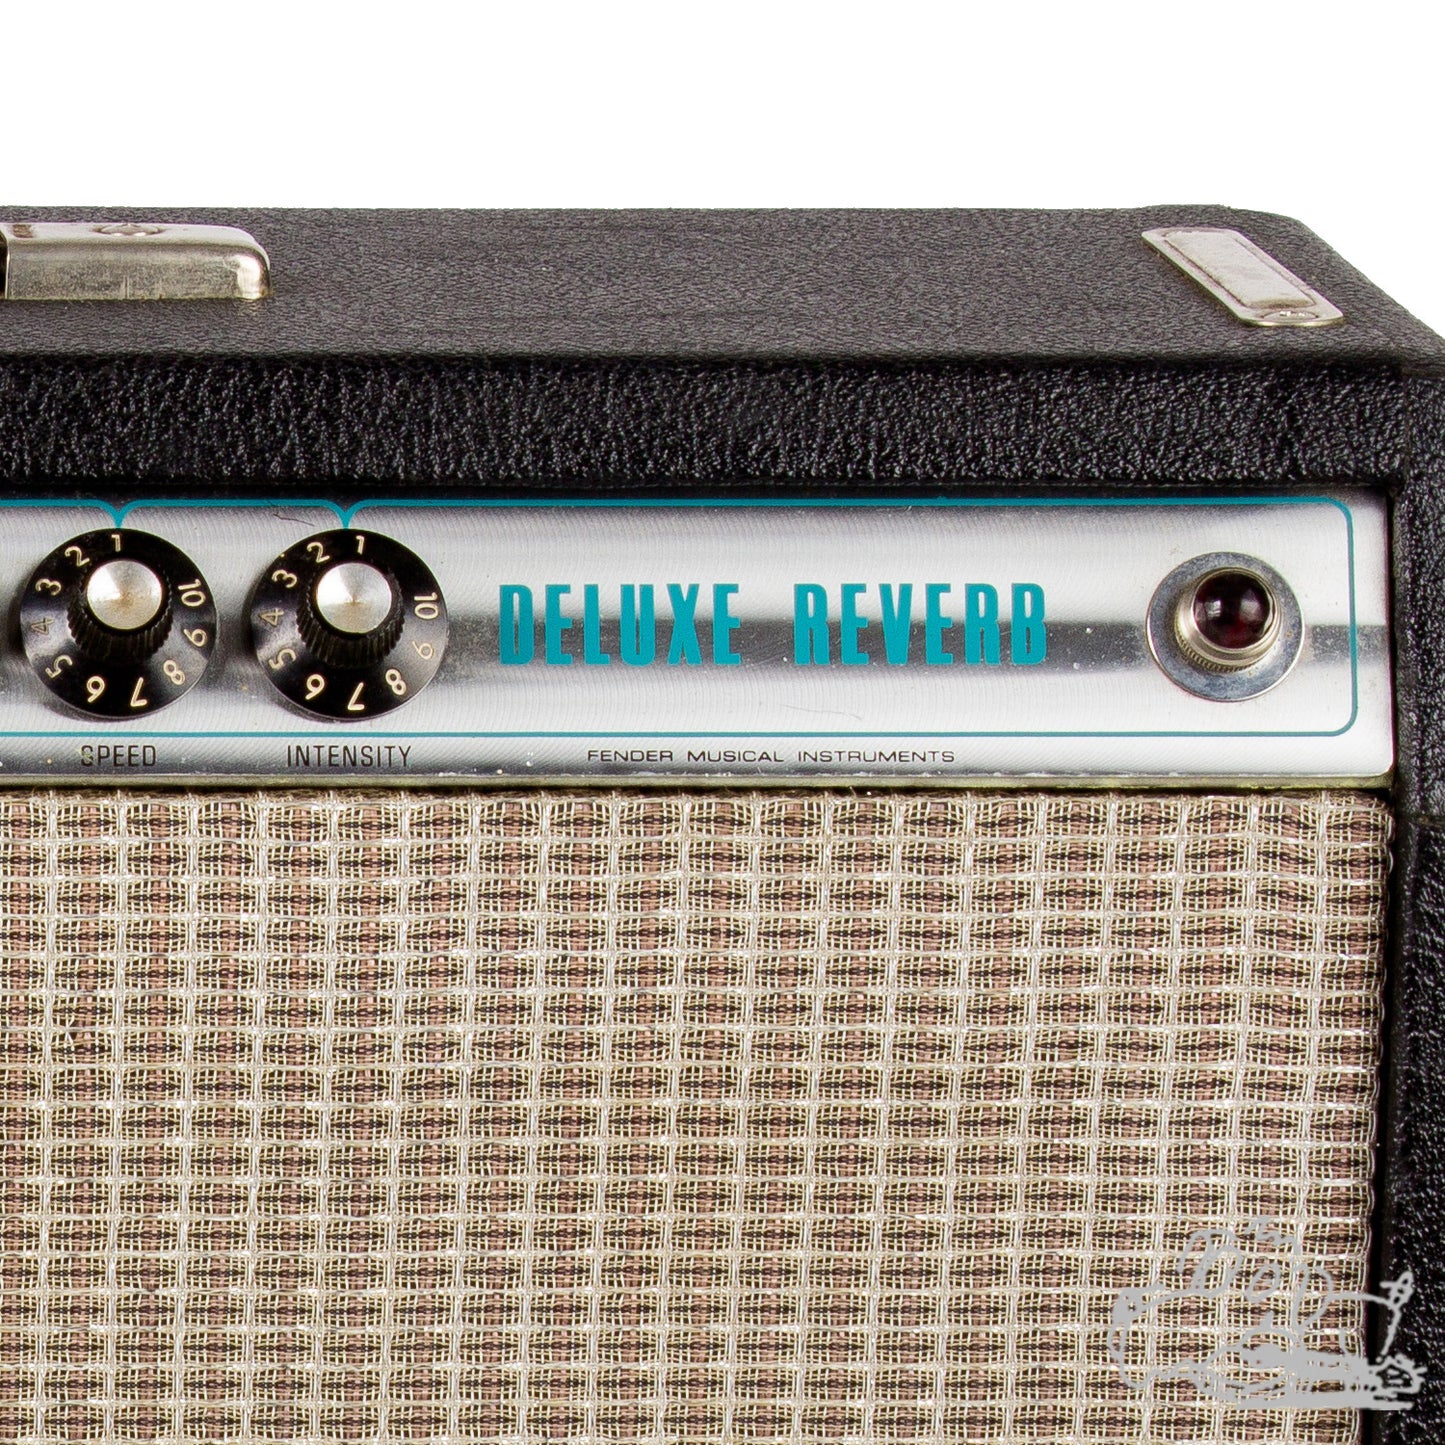 1974 Fender Deluxe Reverb